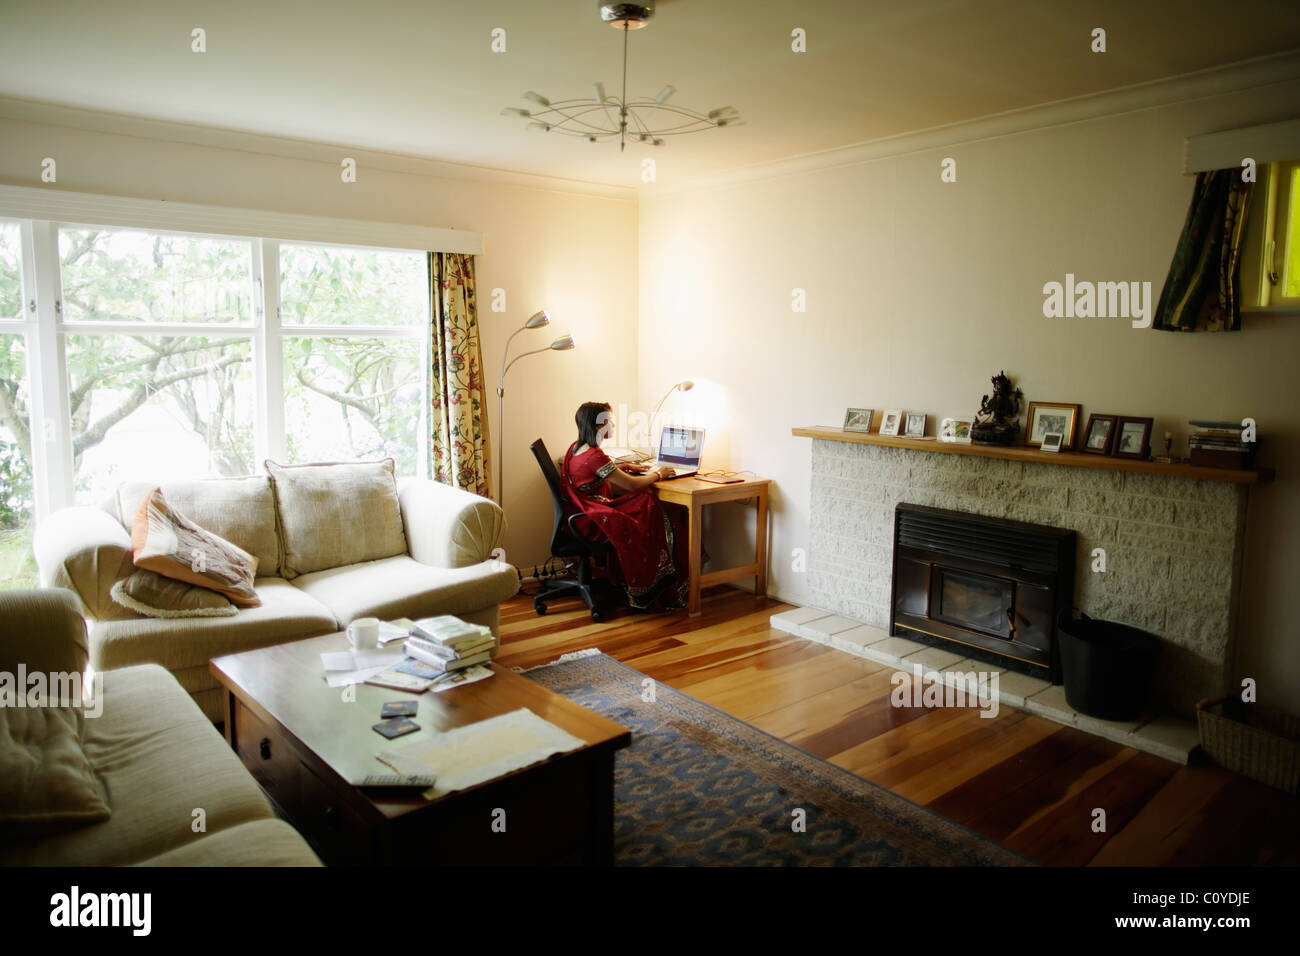 Bureau à domicile. Le punjabi femme en sari rouge travaillant à la maison avec bureau dans la salle de séjour. Banque D'Images